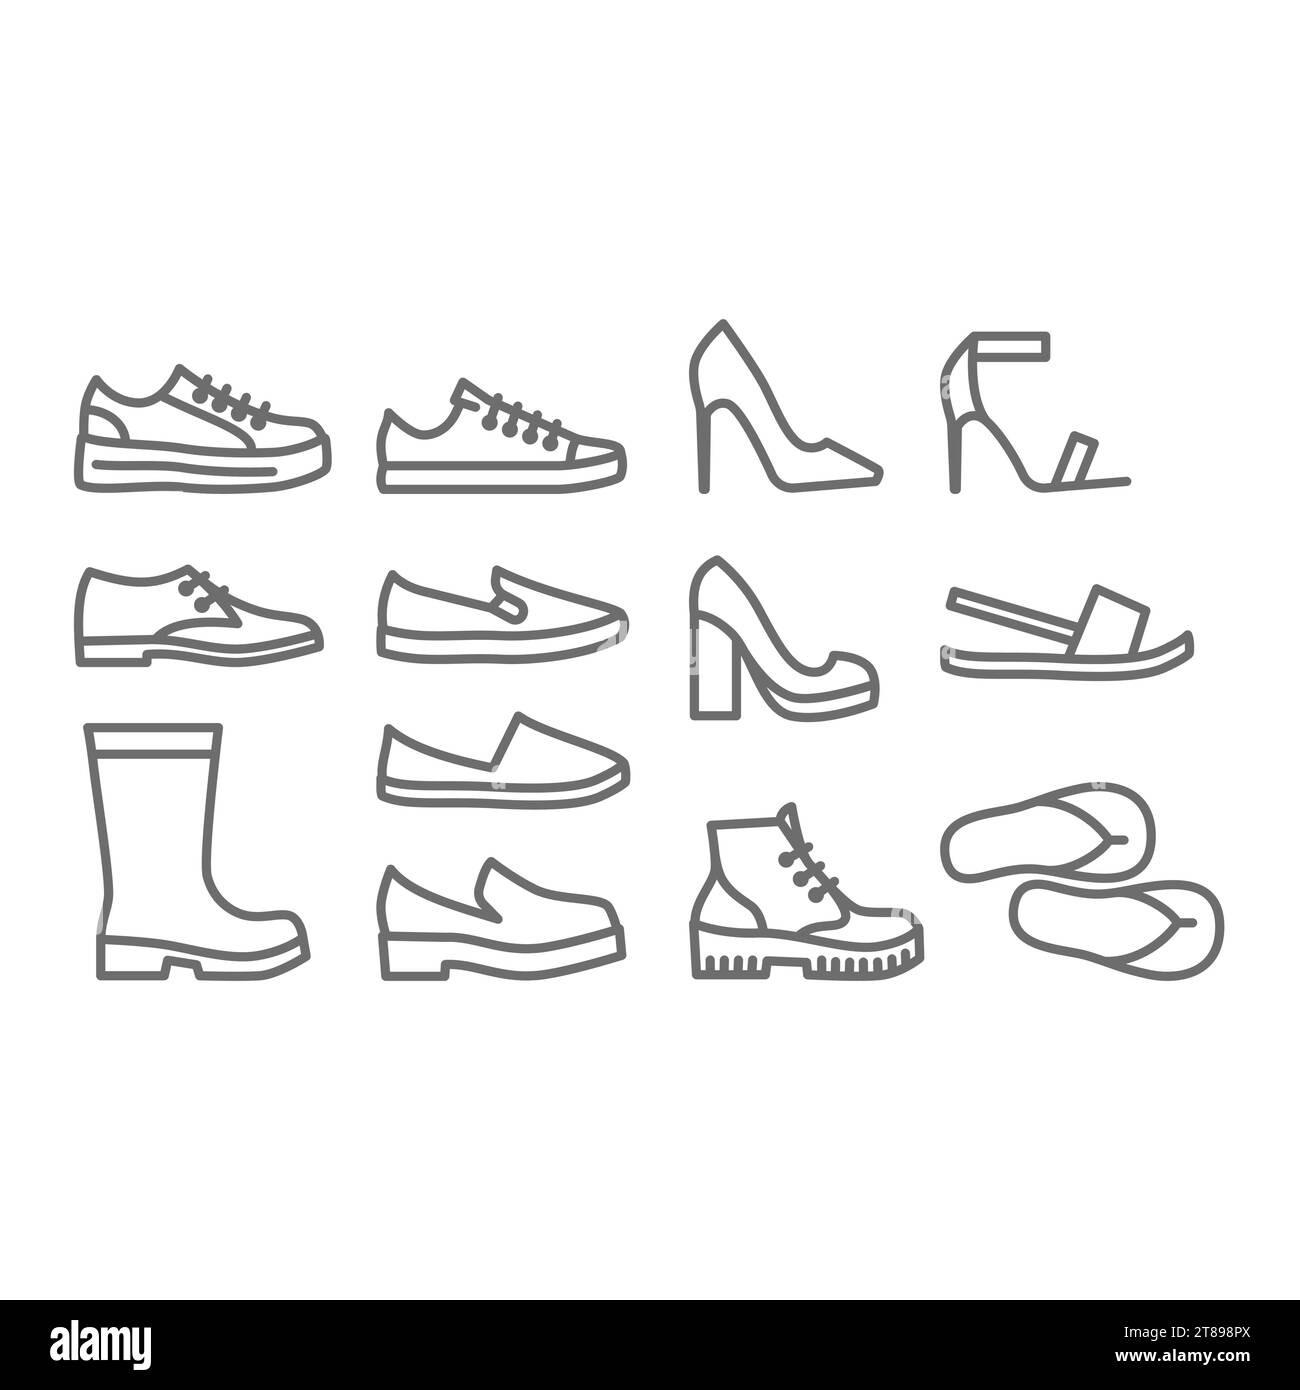 Scarpe, set di icone vettoriali da uomo e da donna. Scarpe con tacco alto, sneakers e stivali. Riga modificabile. Illustrazione Vettoriale